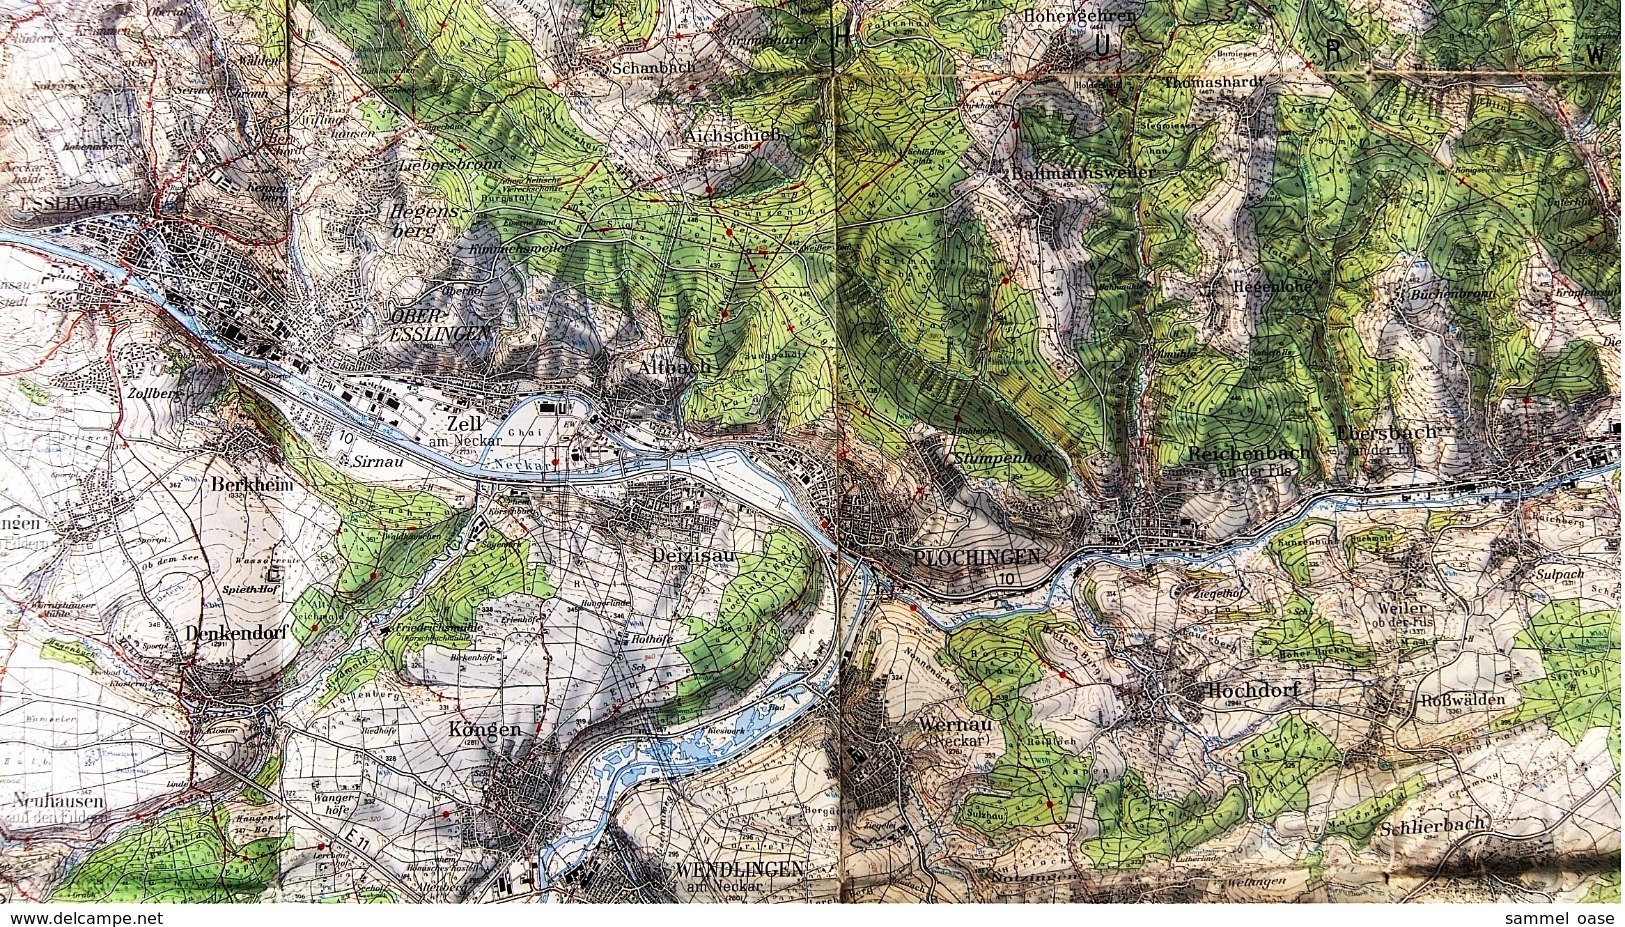 Topographische Karte  - Stuttgart Und Umgebung  -  Ausgabe Mit Wanderwegen  -  Von 1968 - Mappemondes